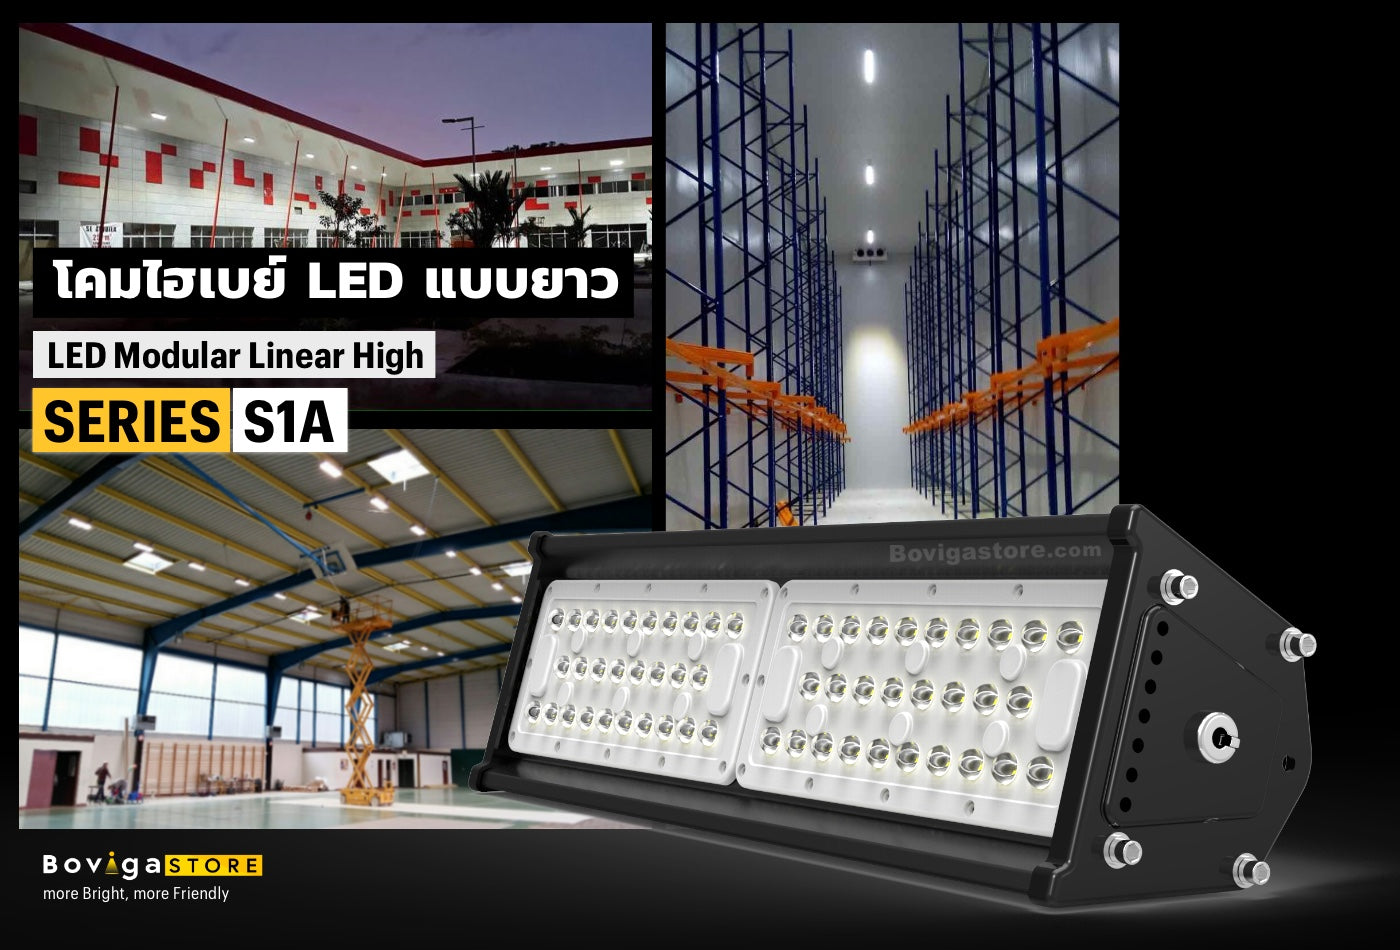 โคมไฟสำหรับติดตั้งในช่อง rack คลังสินค้า ชั้นวางสินค้าอุตสาหกรรม led linear high bay รุ่น series s1a แบรนด์ box bright